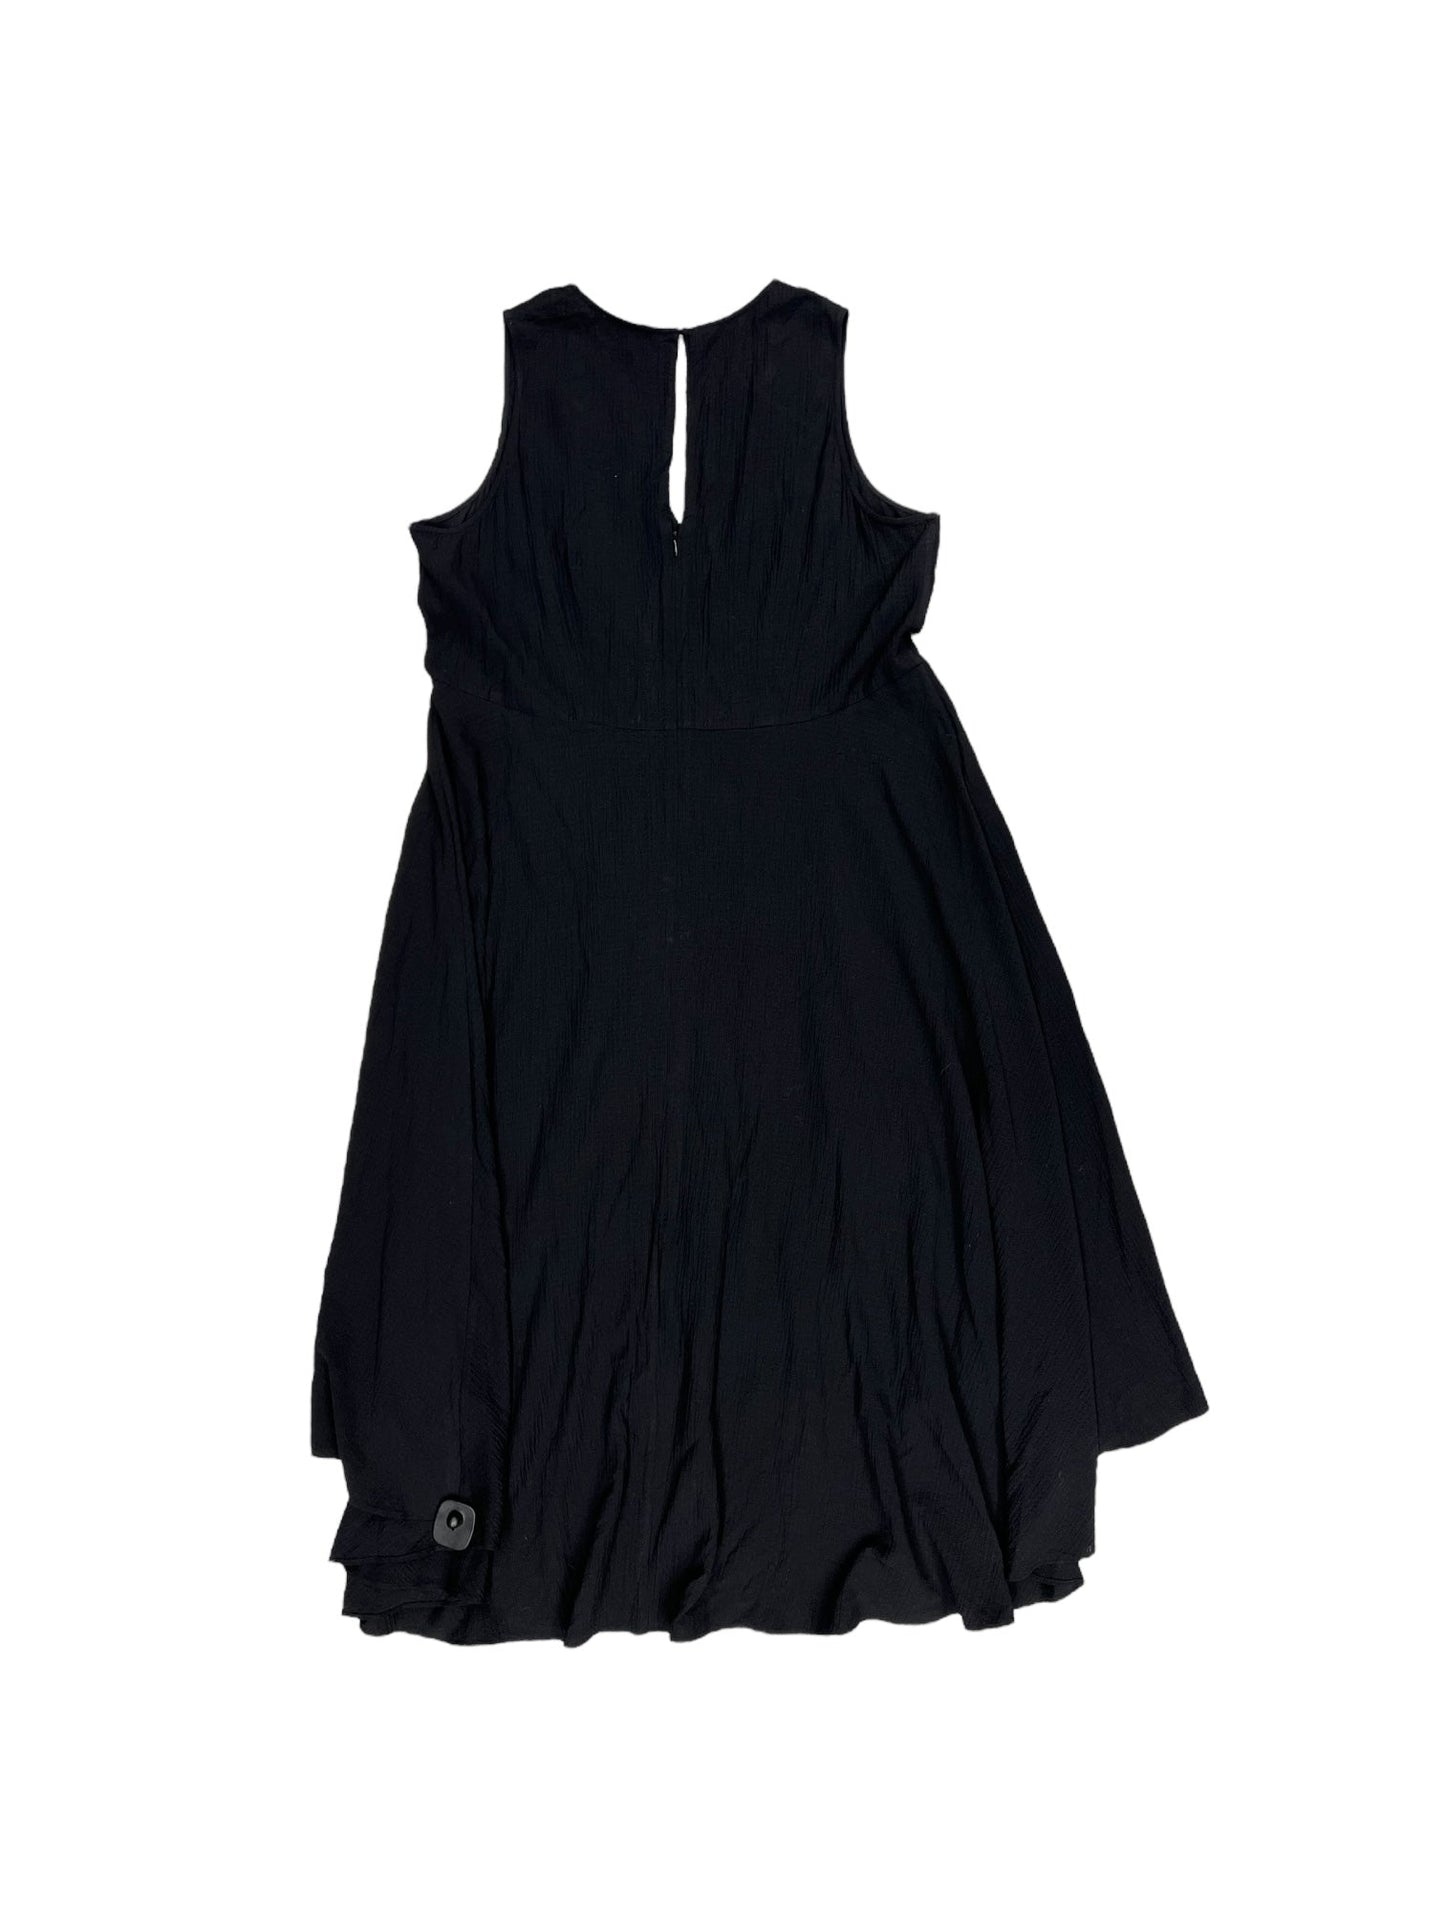 Black Dress Casual Maxi Calvin Klein, Size 16